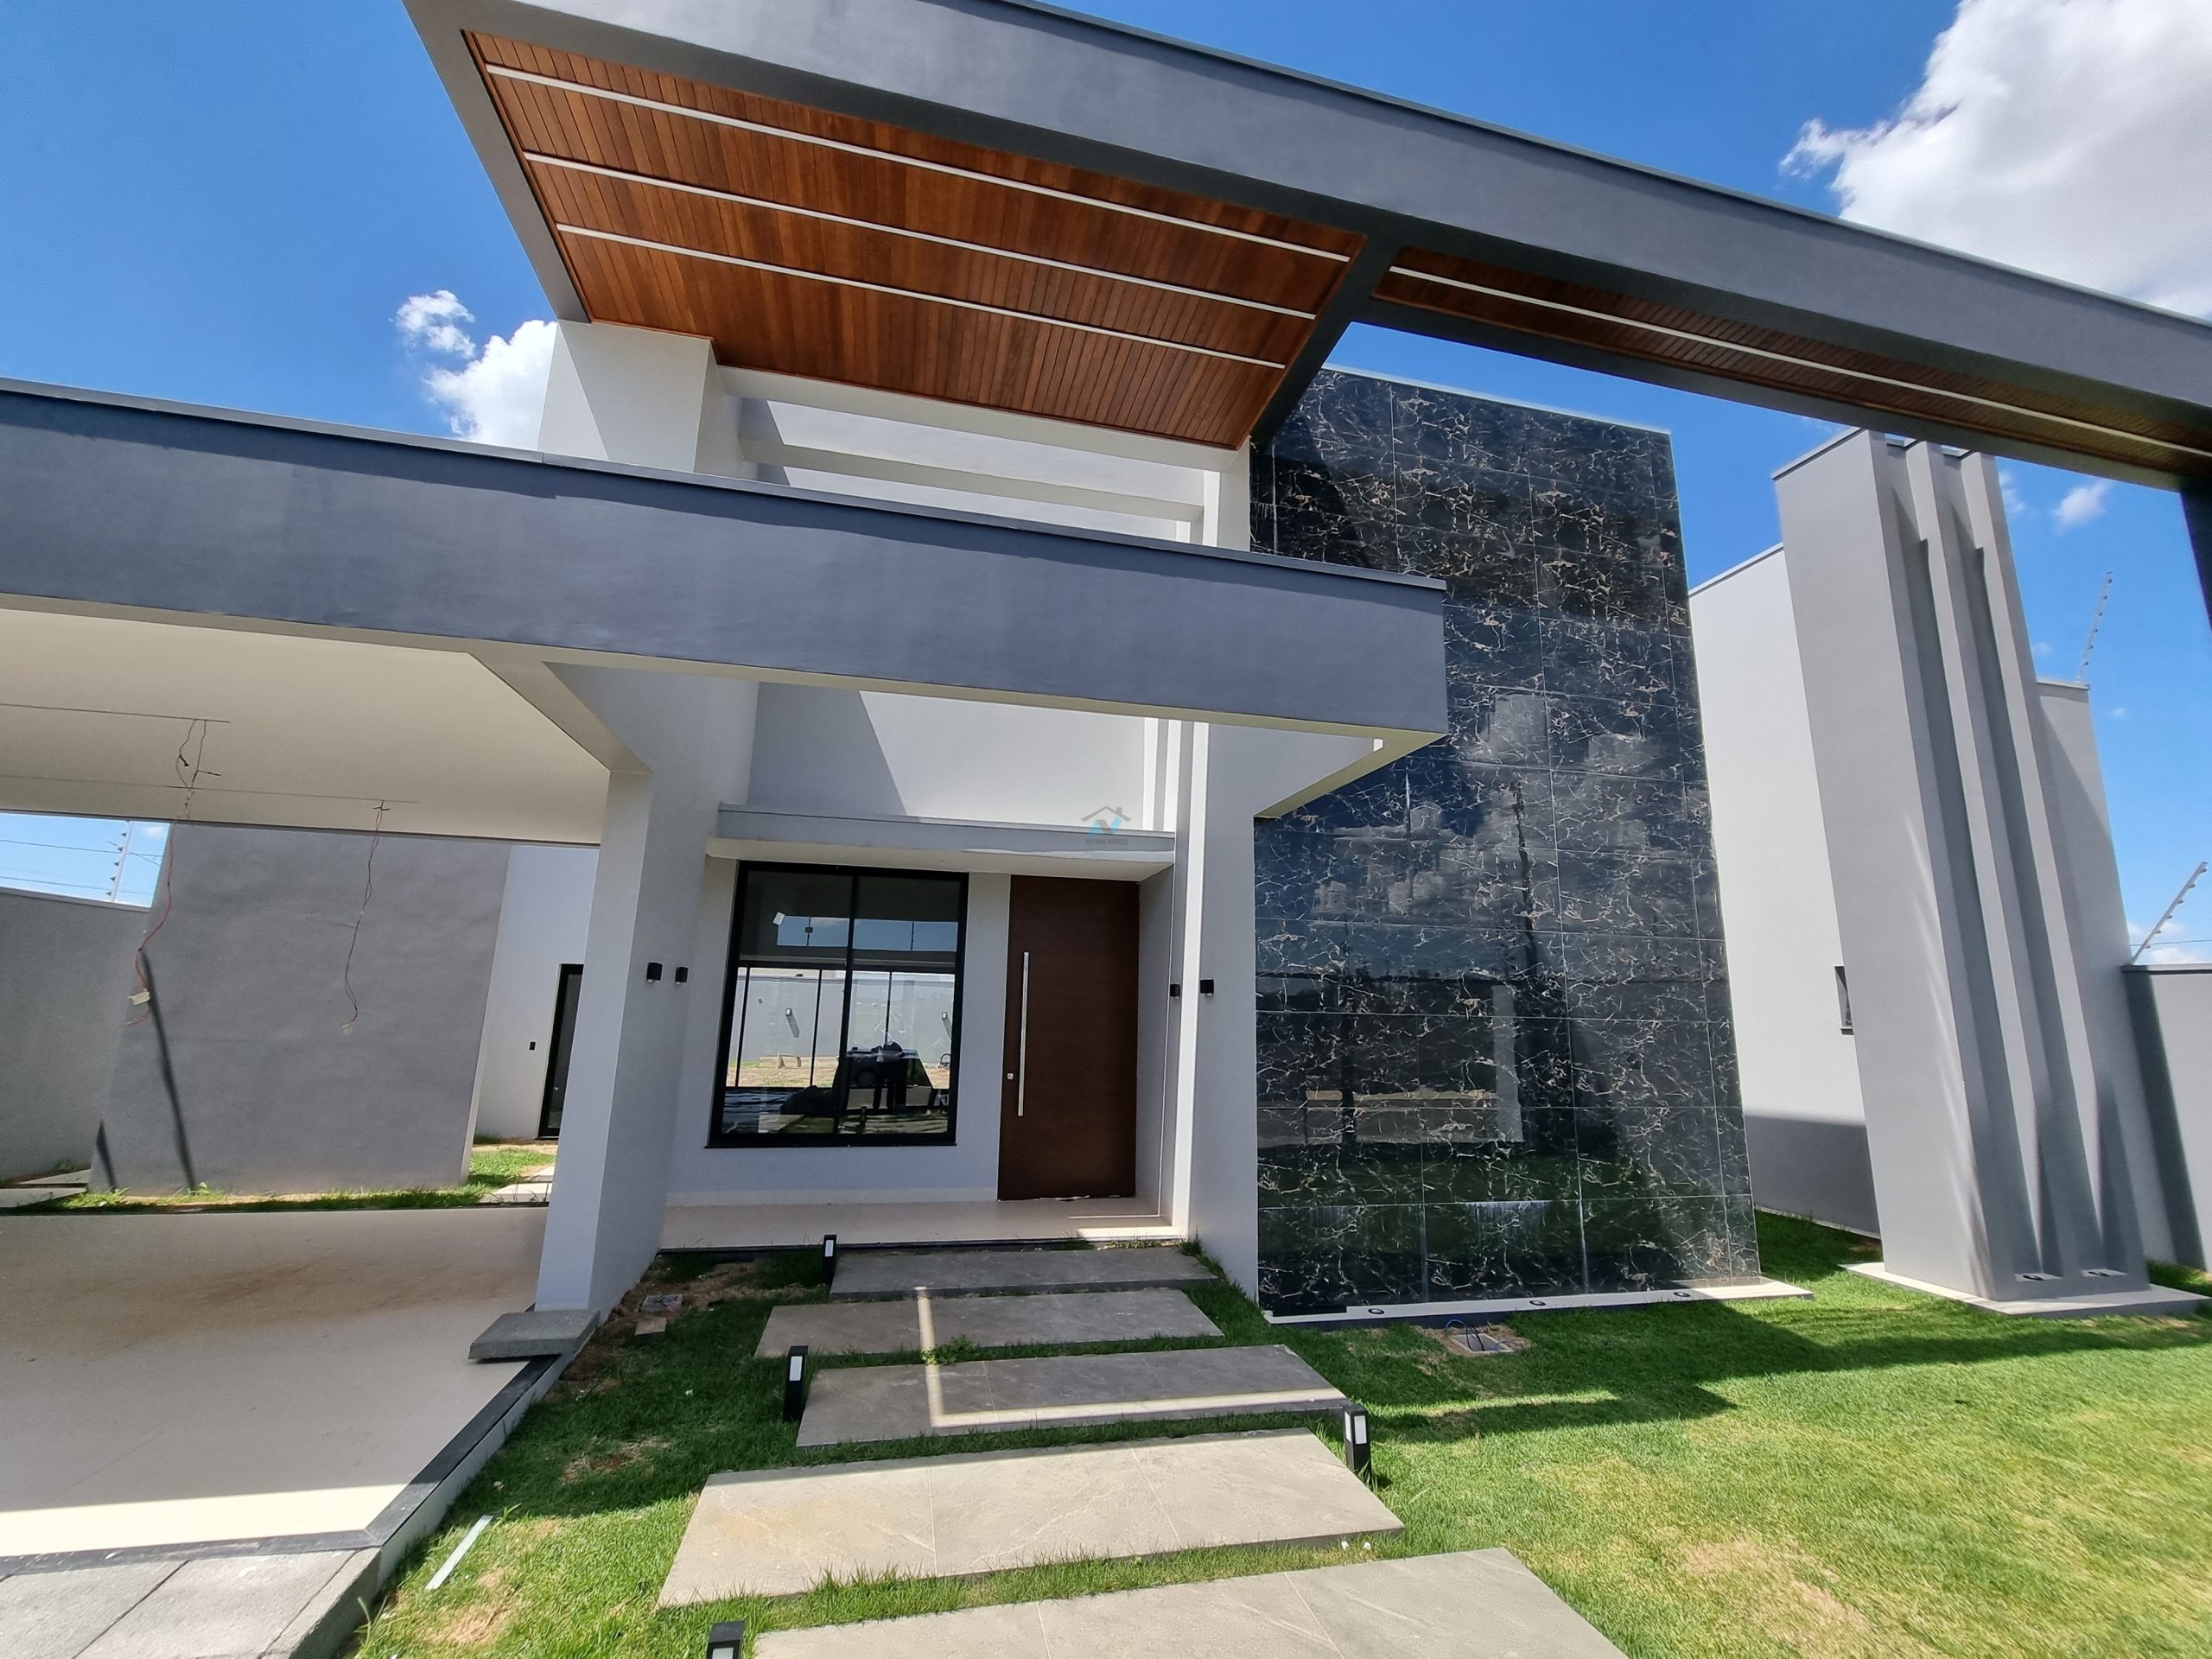 Cod. 298 – Casa a venda no bairro Belvedere com fachada moderna e acabamento excelente